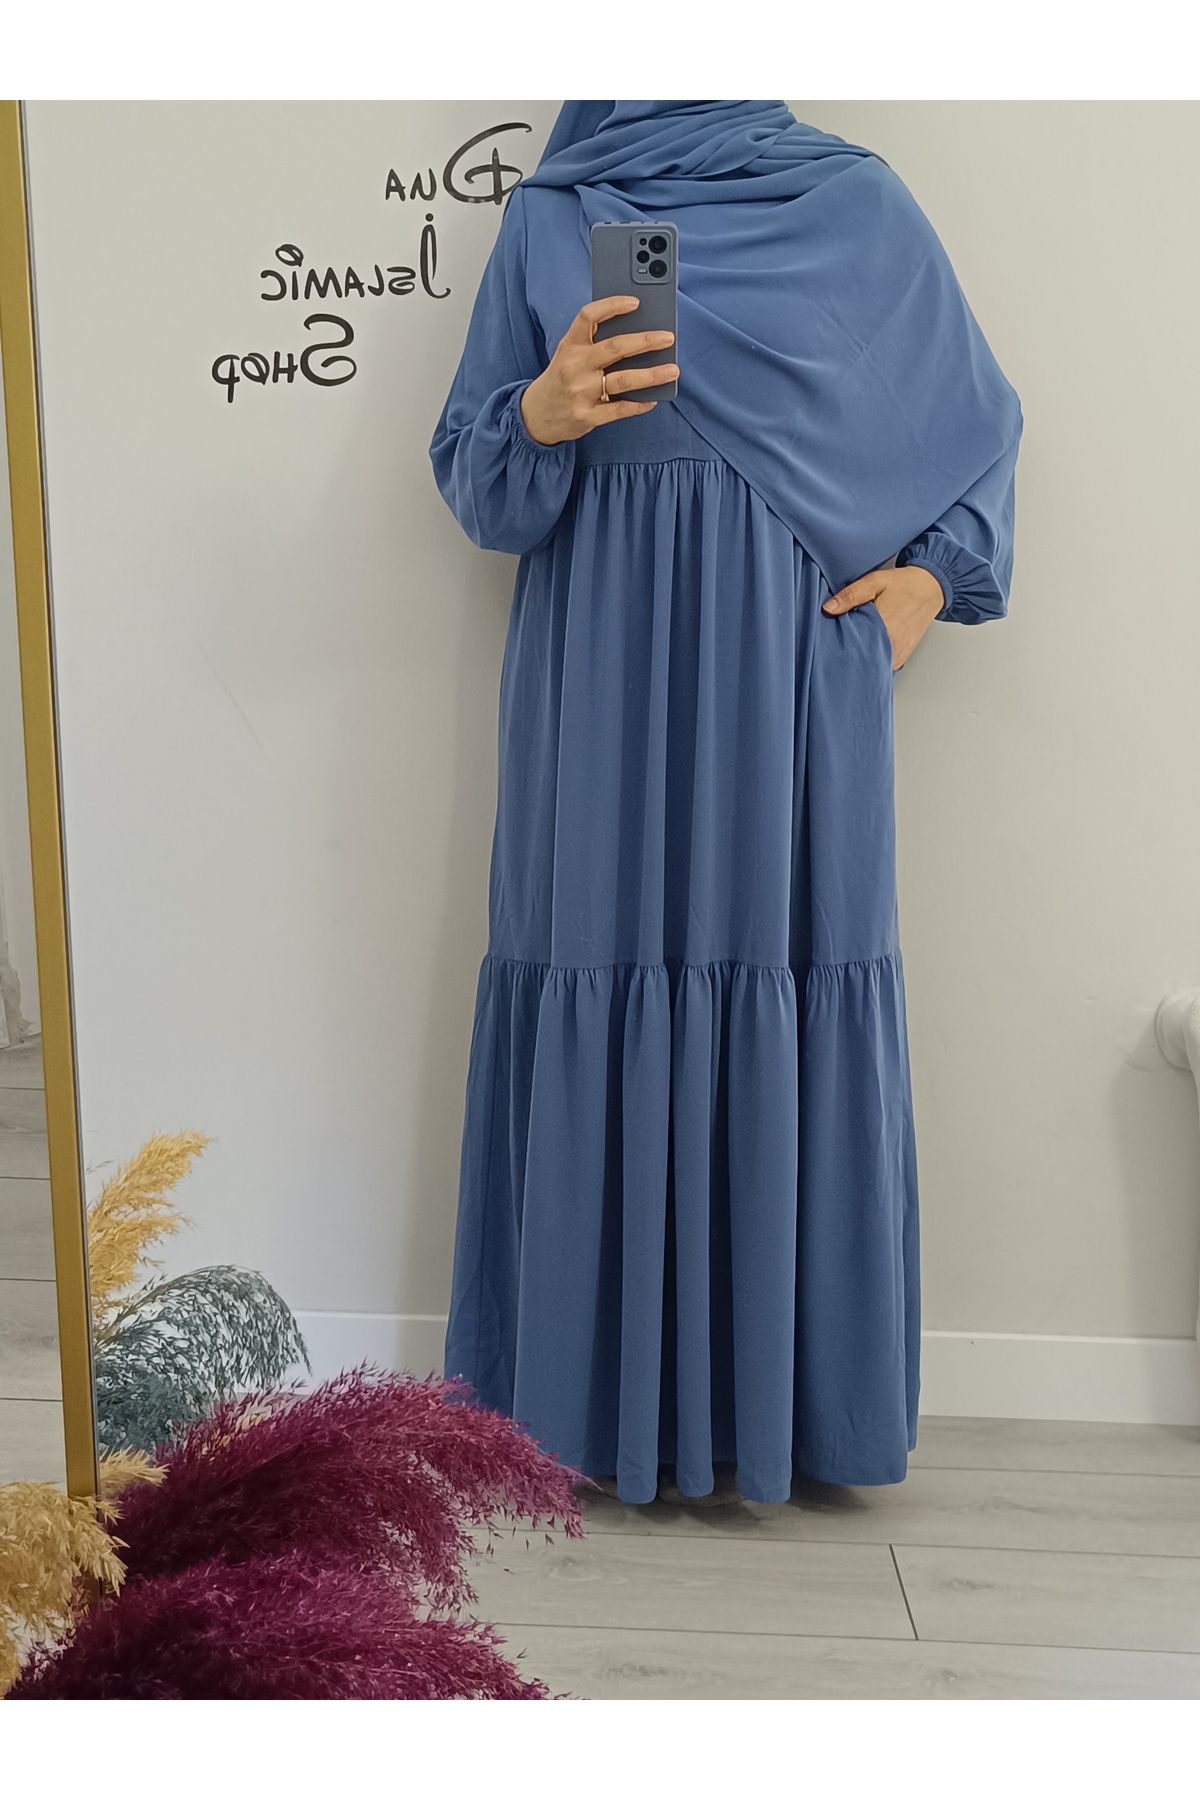 dua' is 1. Kalite Medine İpeği Şal + Jilbab Elbise Takımı